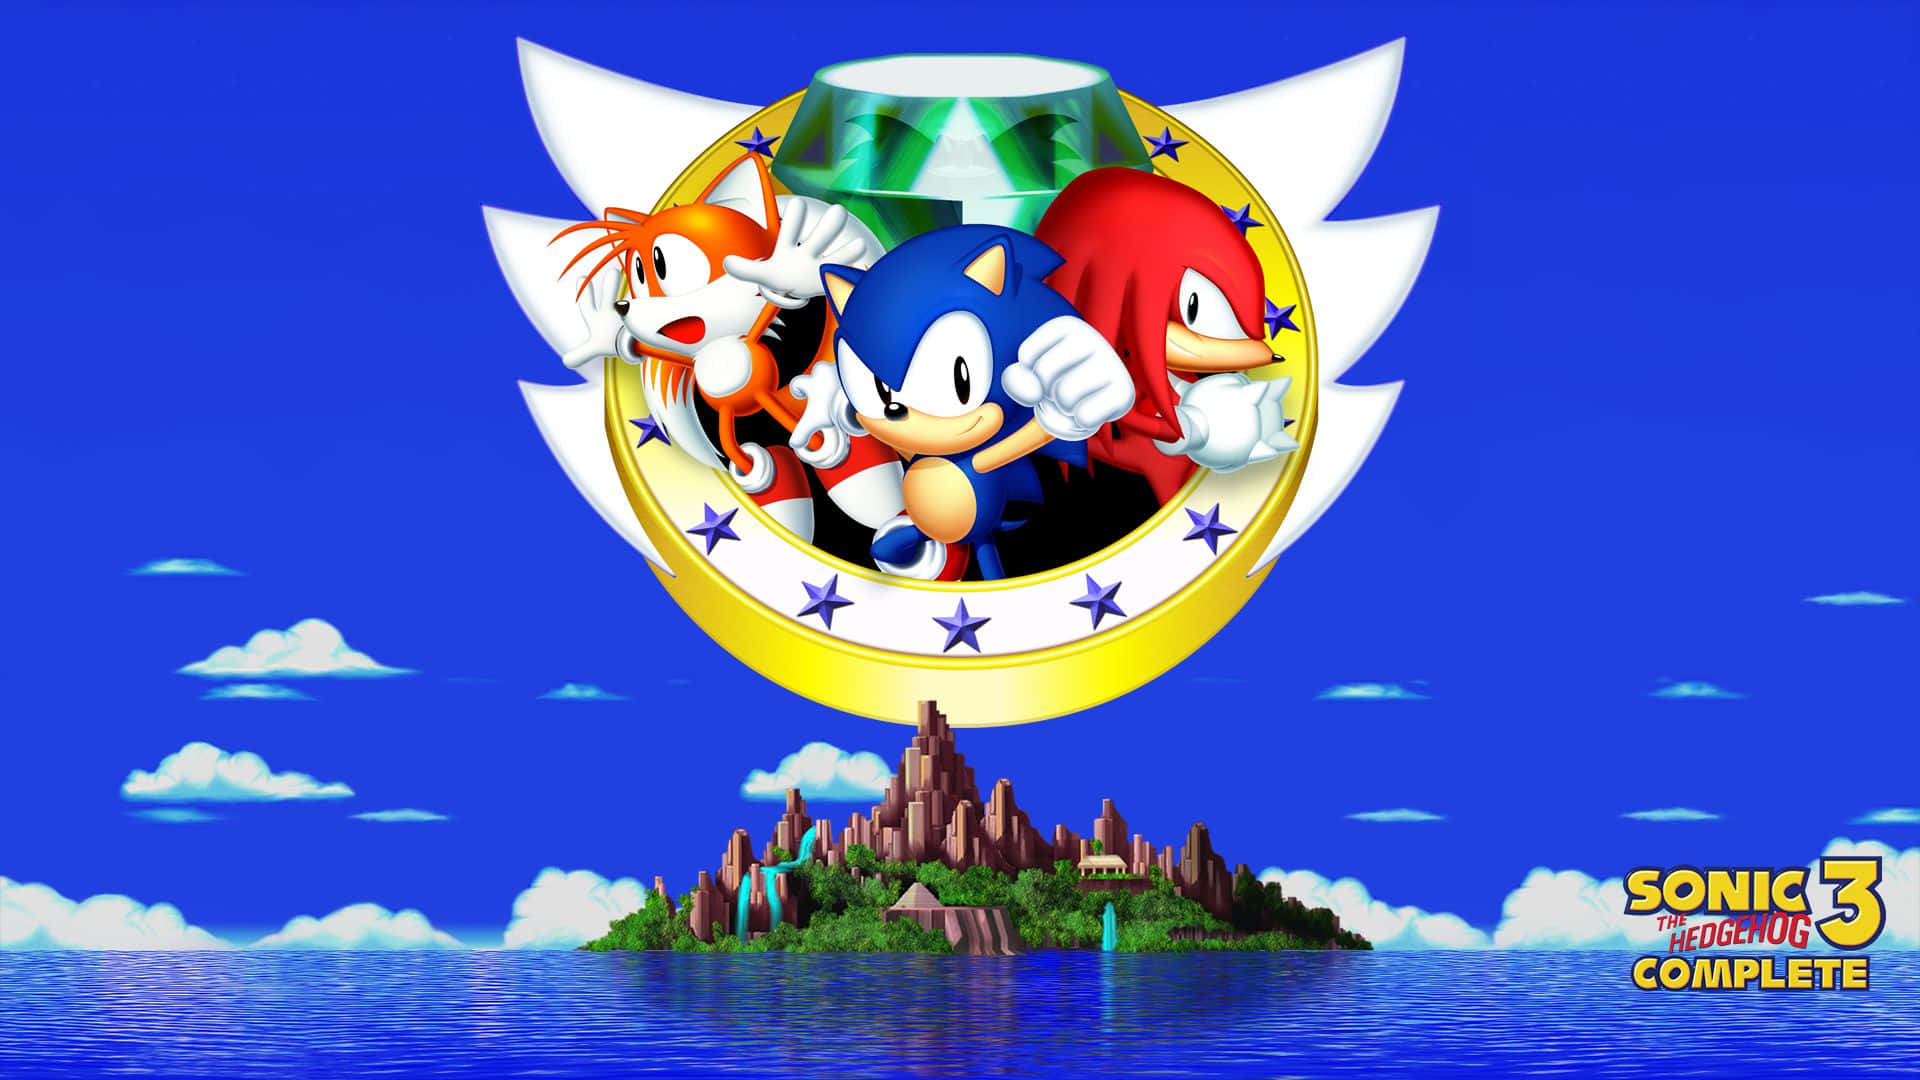 Sonic The Hedgehog, Sonic The Hedgehog, Sonic The Hedgehog, Sonic The Hedgehog, Sonic The Wallpaper